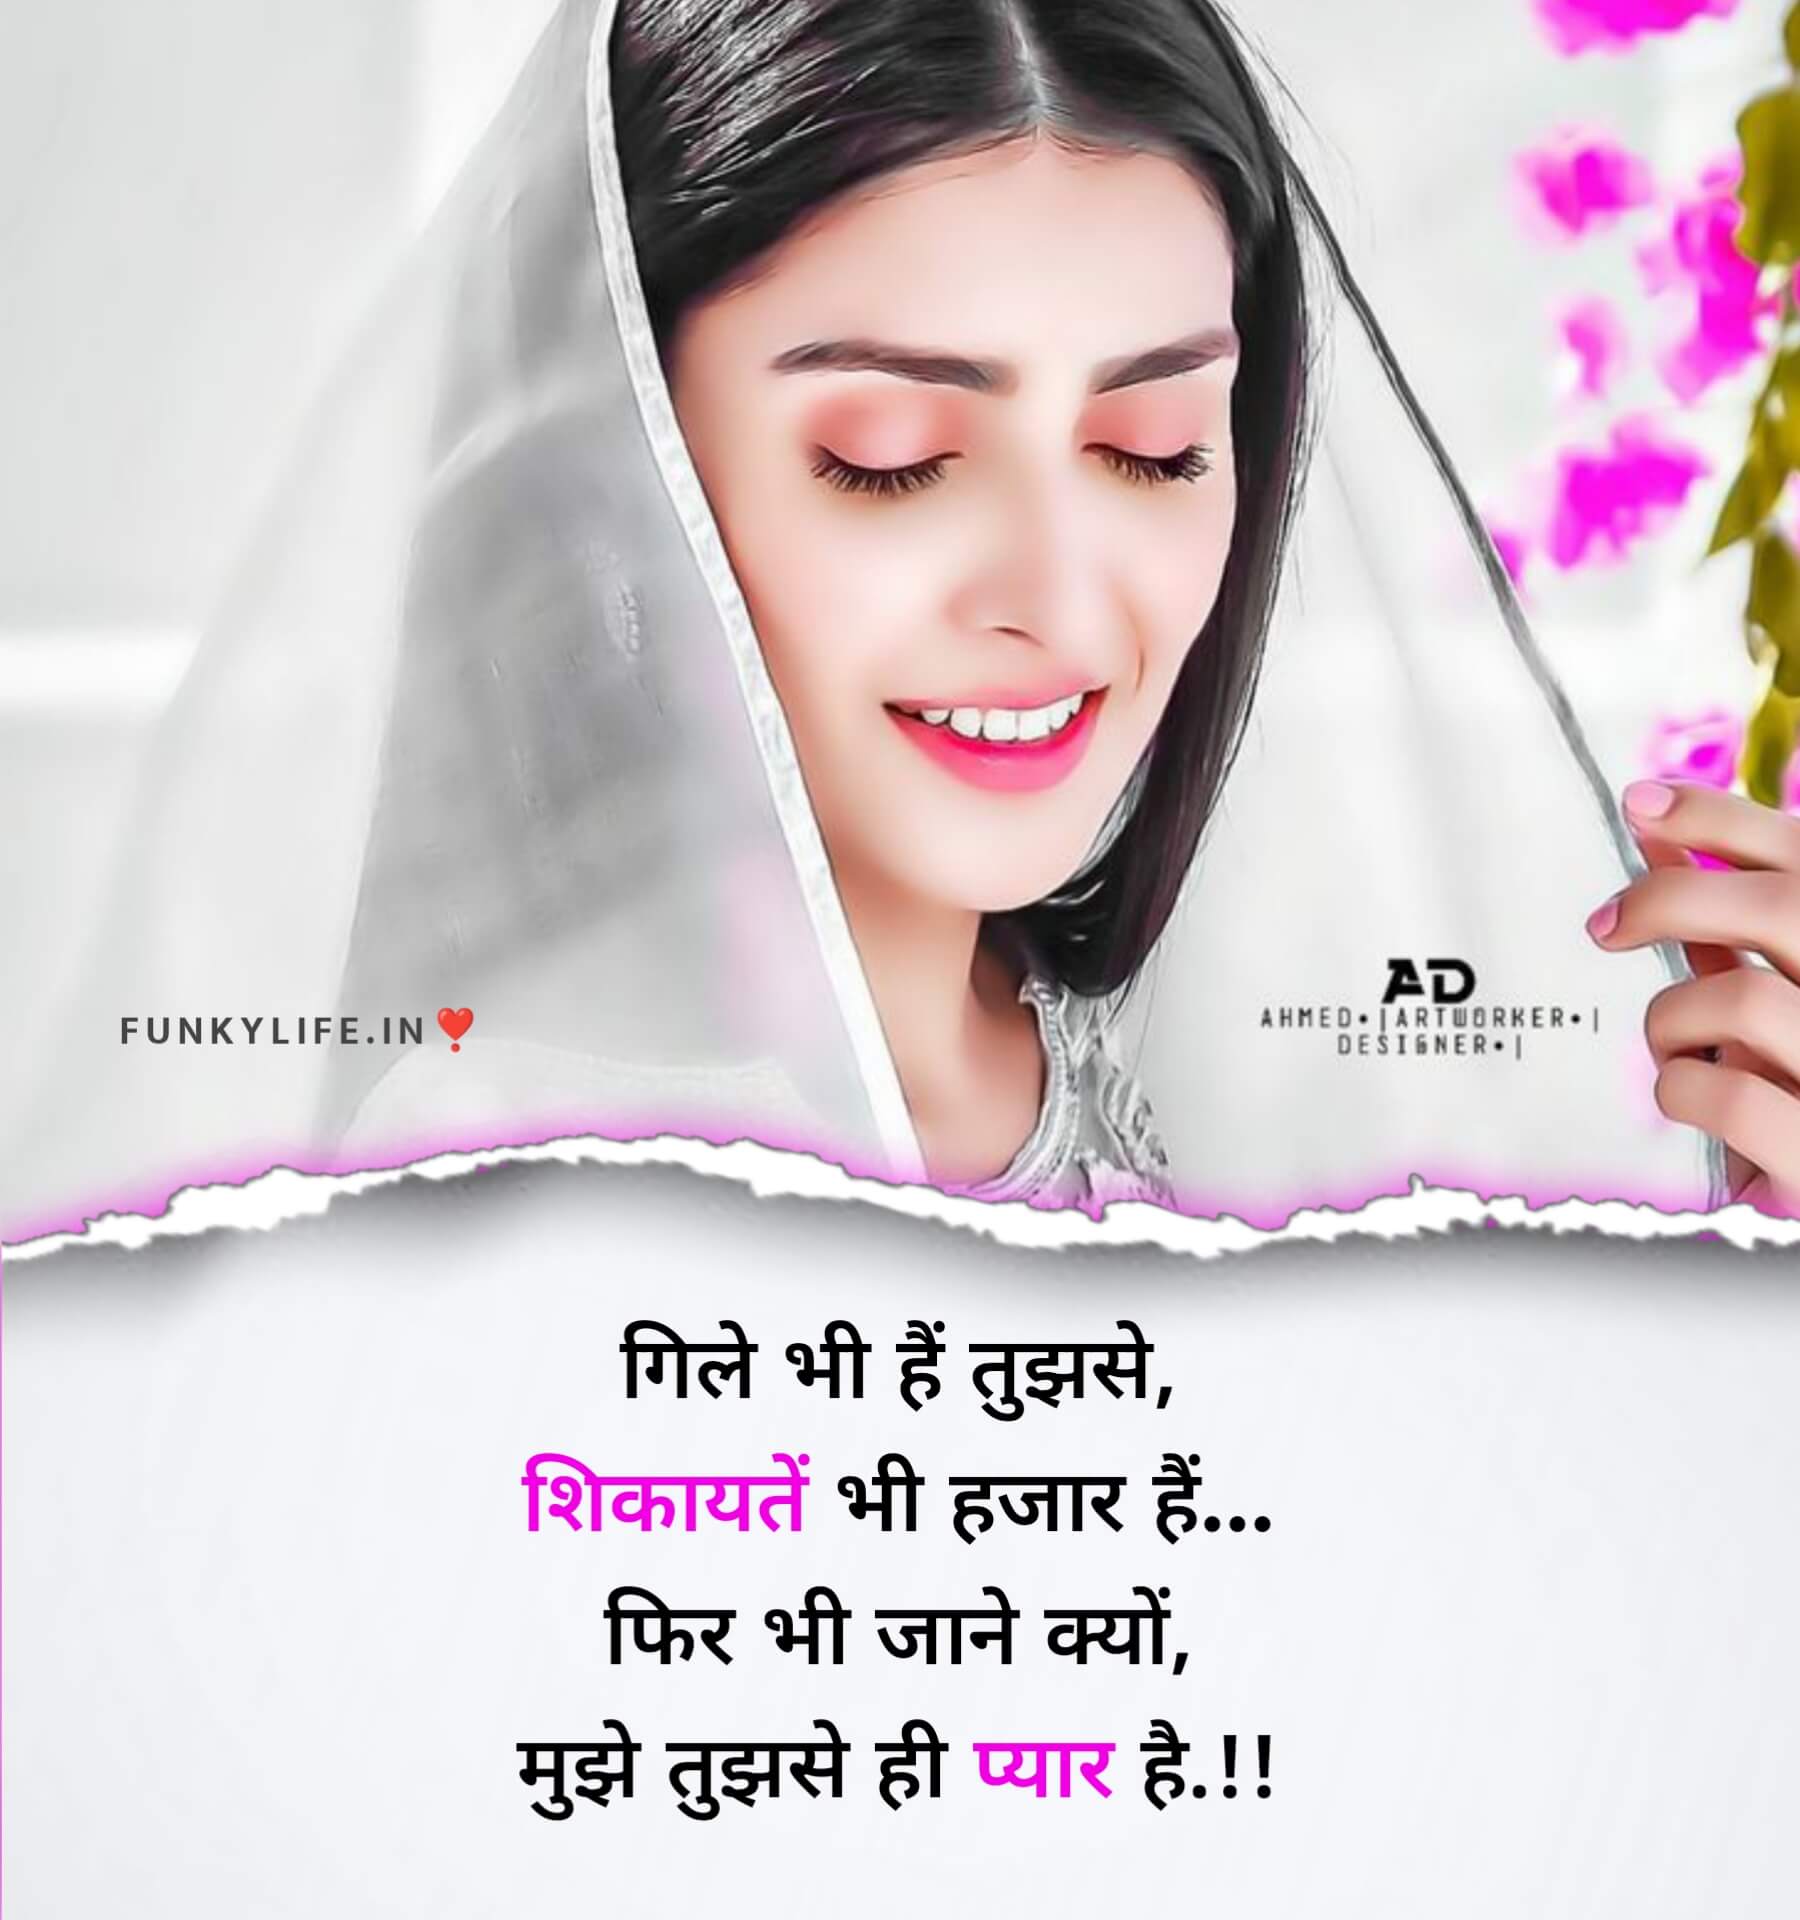 Love Shayari Hindi